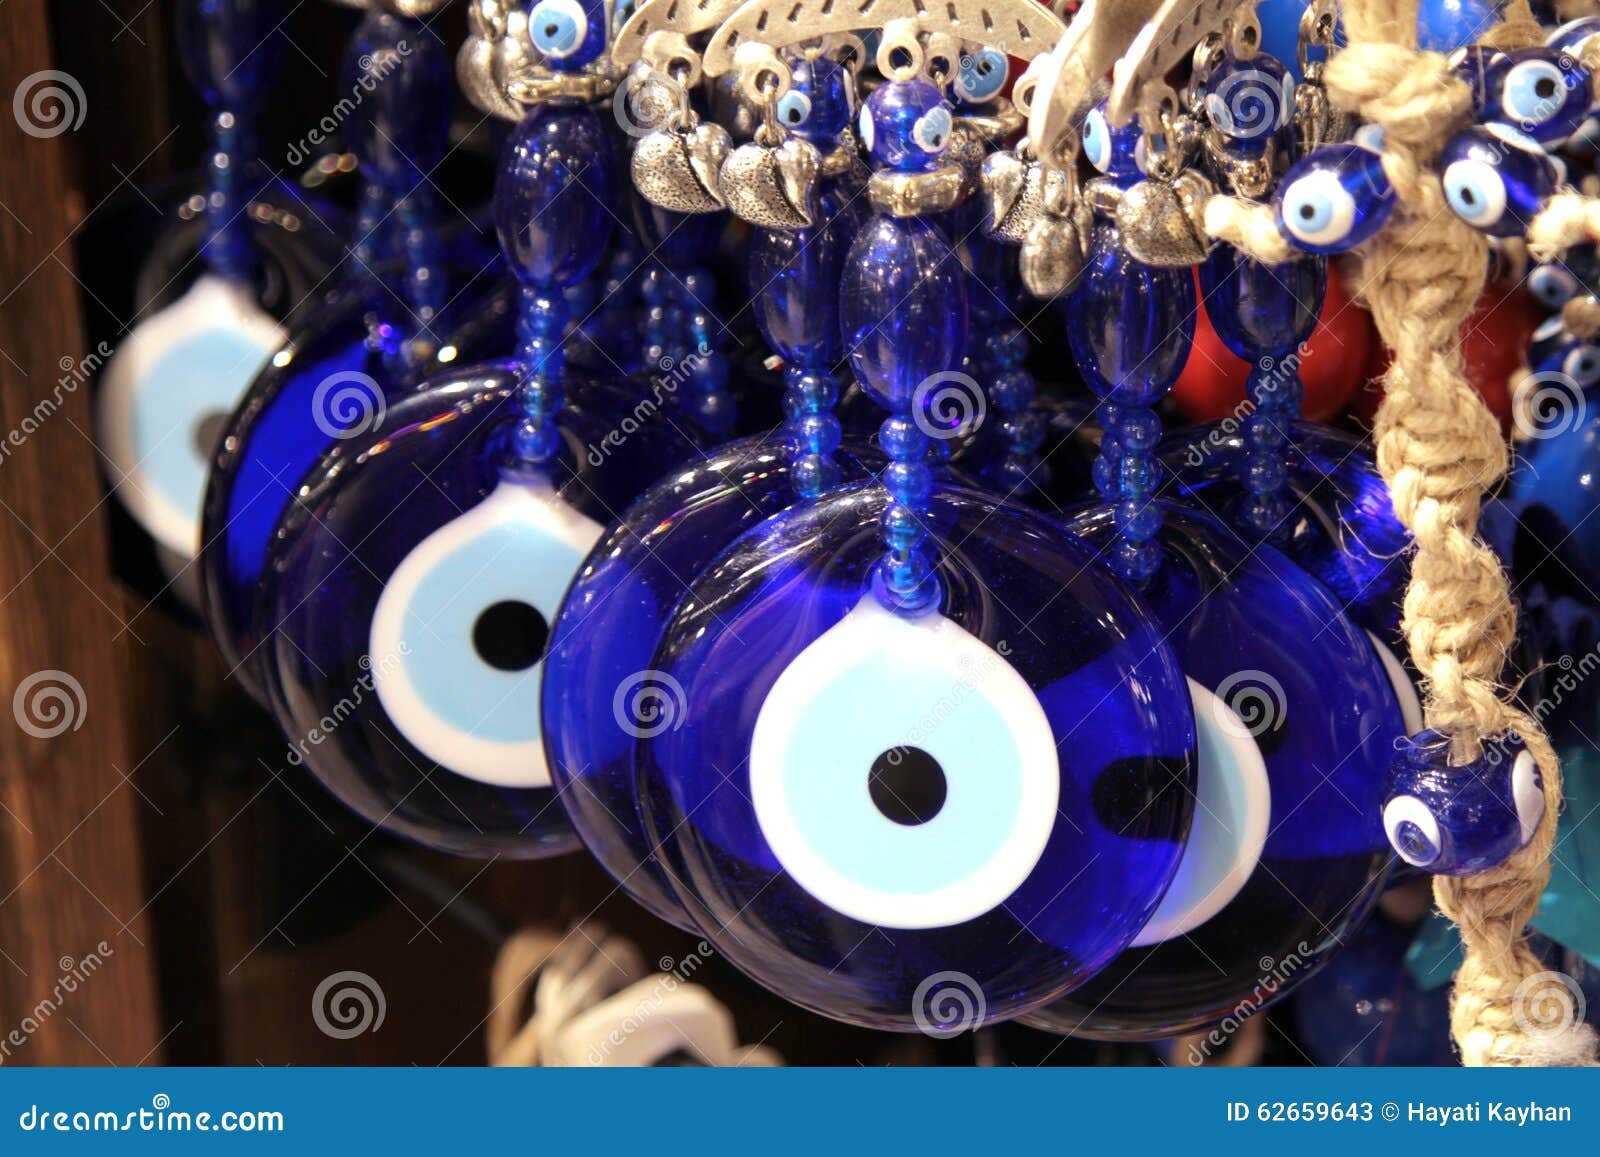 turkish superstition evil eye beads, ( nazar beads )